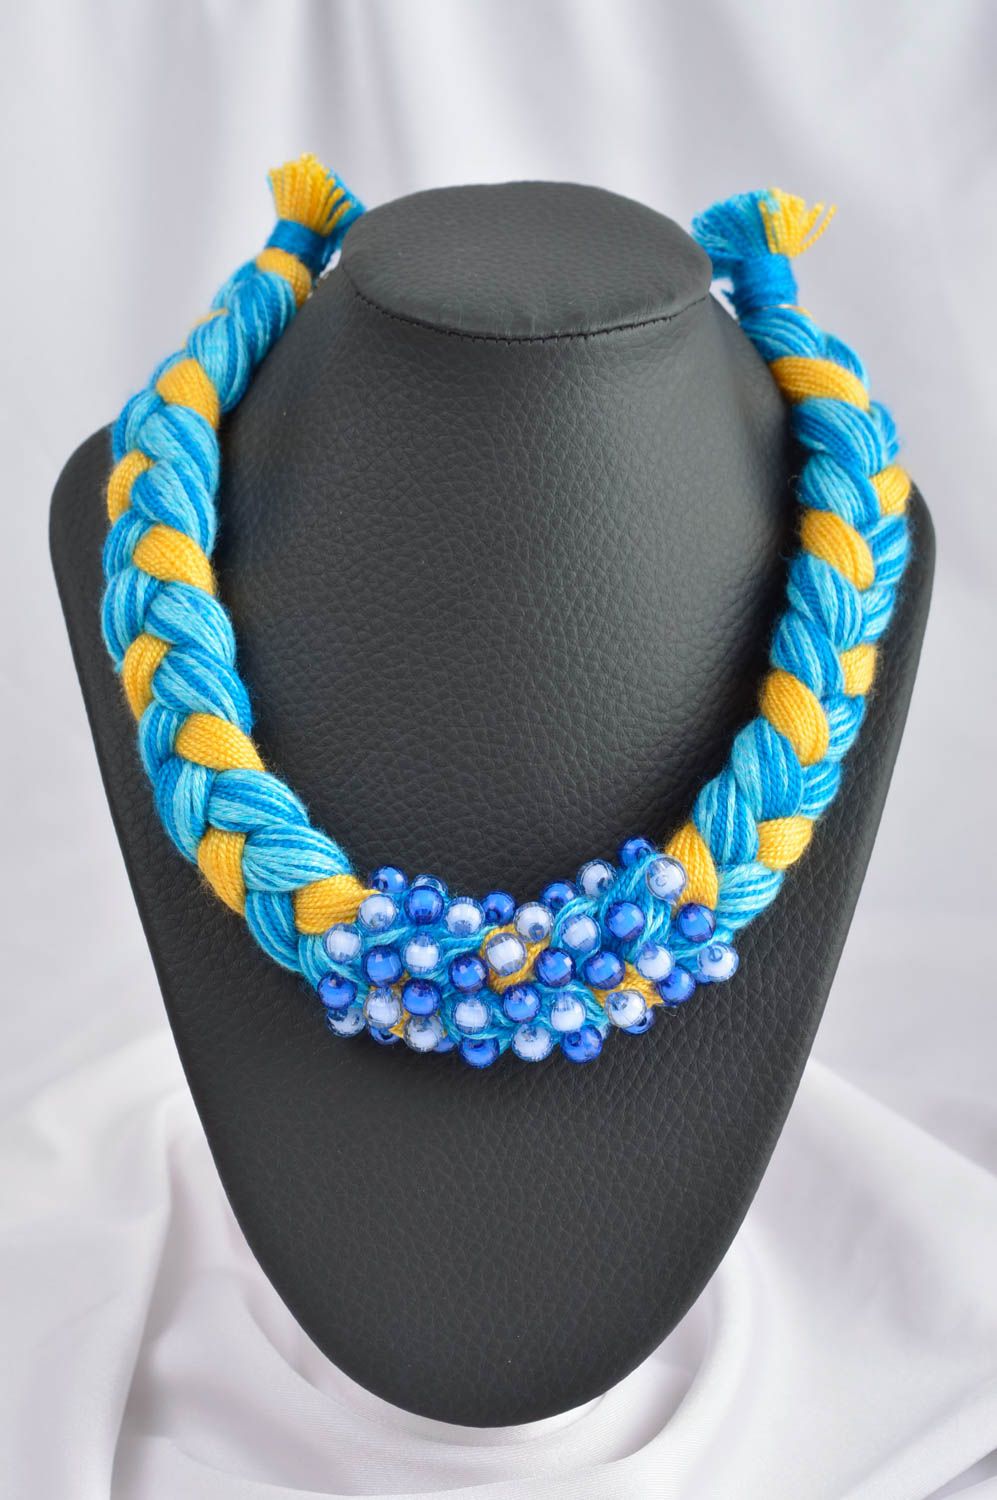 Колье коса украшение на шею ручной работы модная бижутерия голубое с желтым фото 1